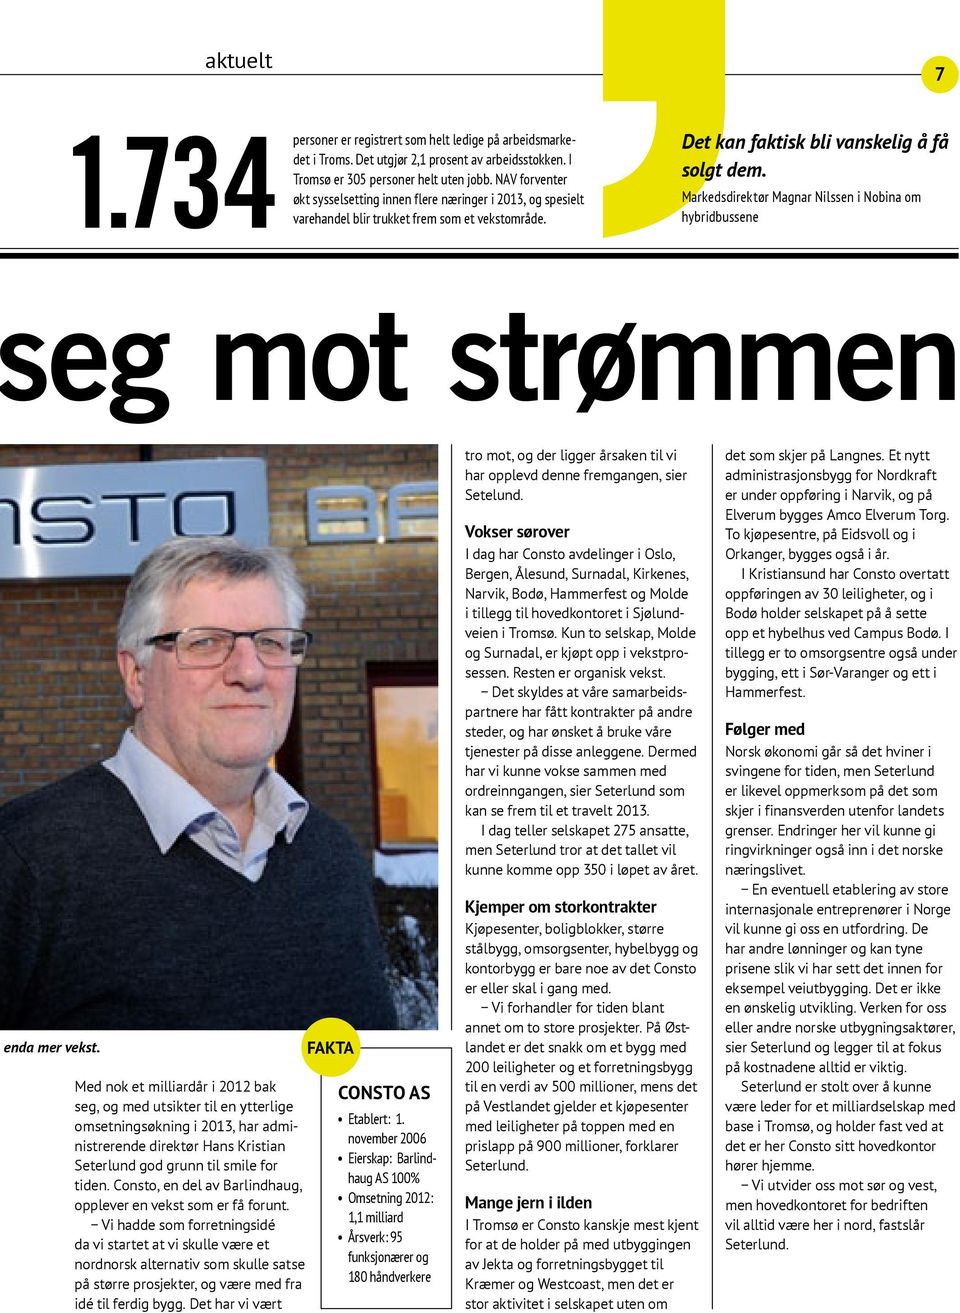 Markedsdirektør Magnar Nilssen i Nobina om hybridbussene eg mot strømmen enda mer vekst.